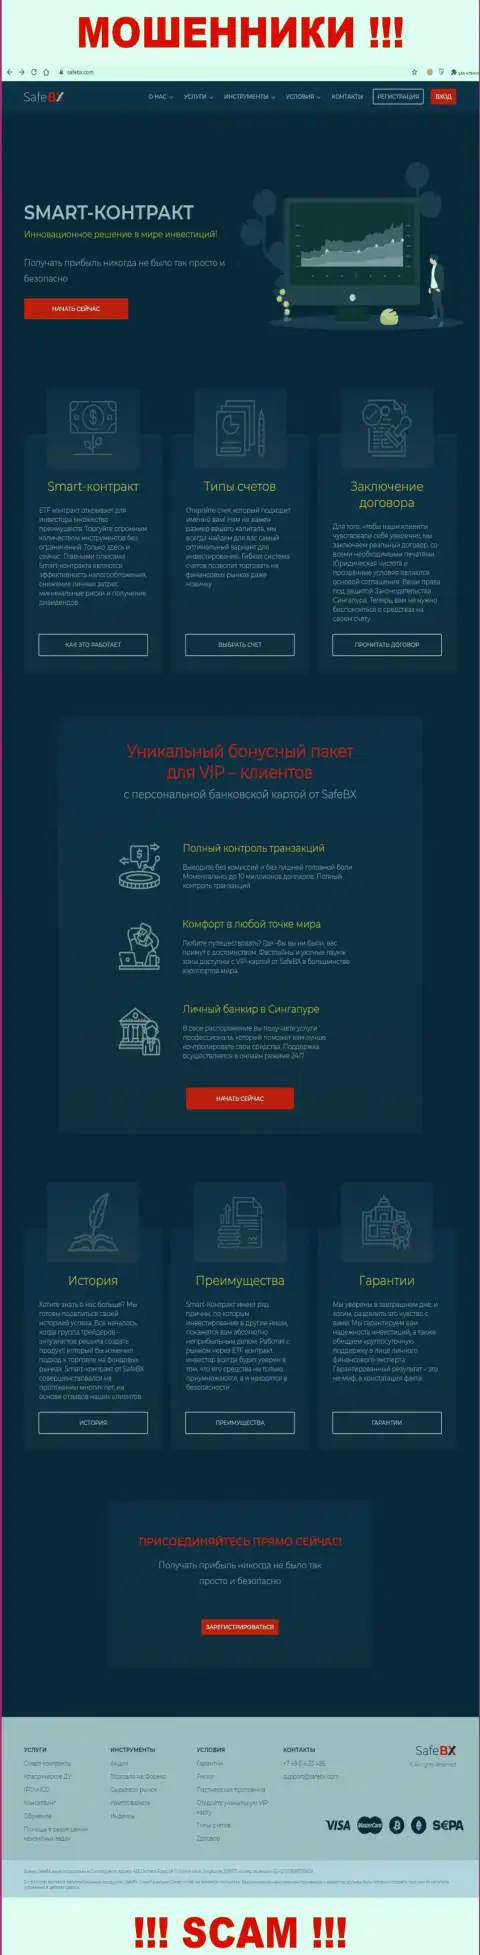 Скрин официального сайта СейфБх Ком - SafeBX Com